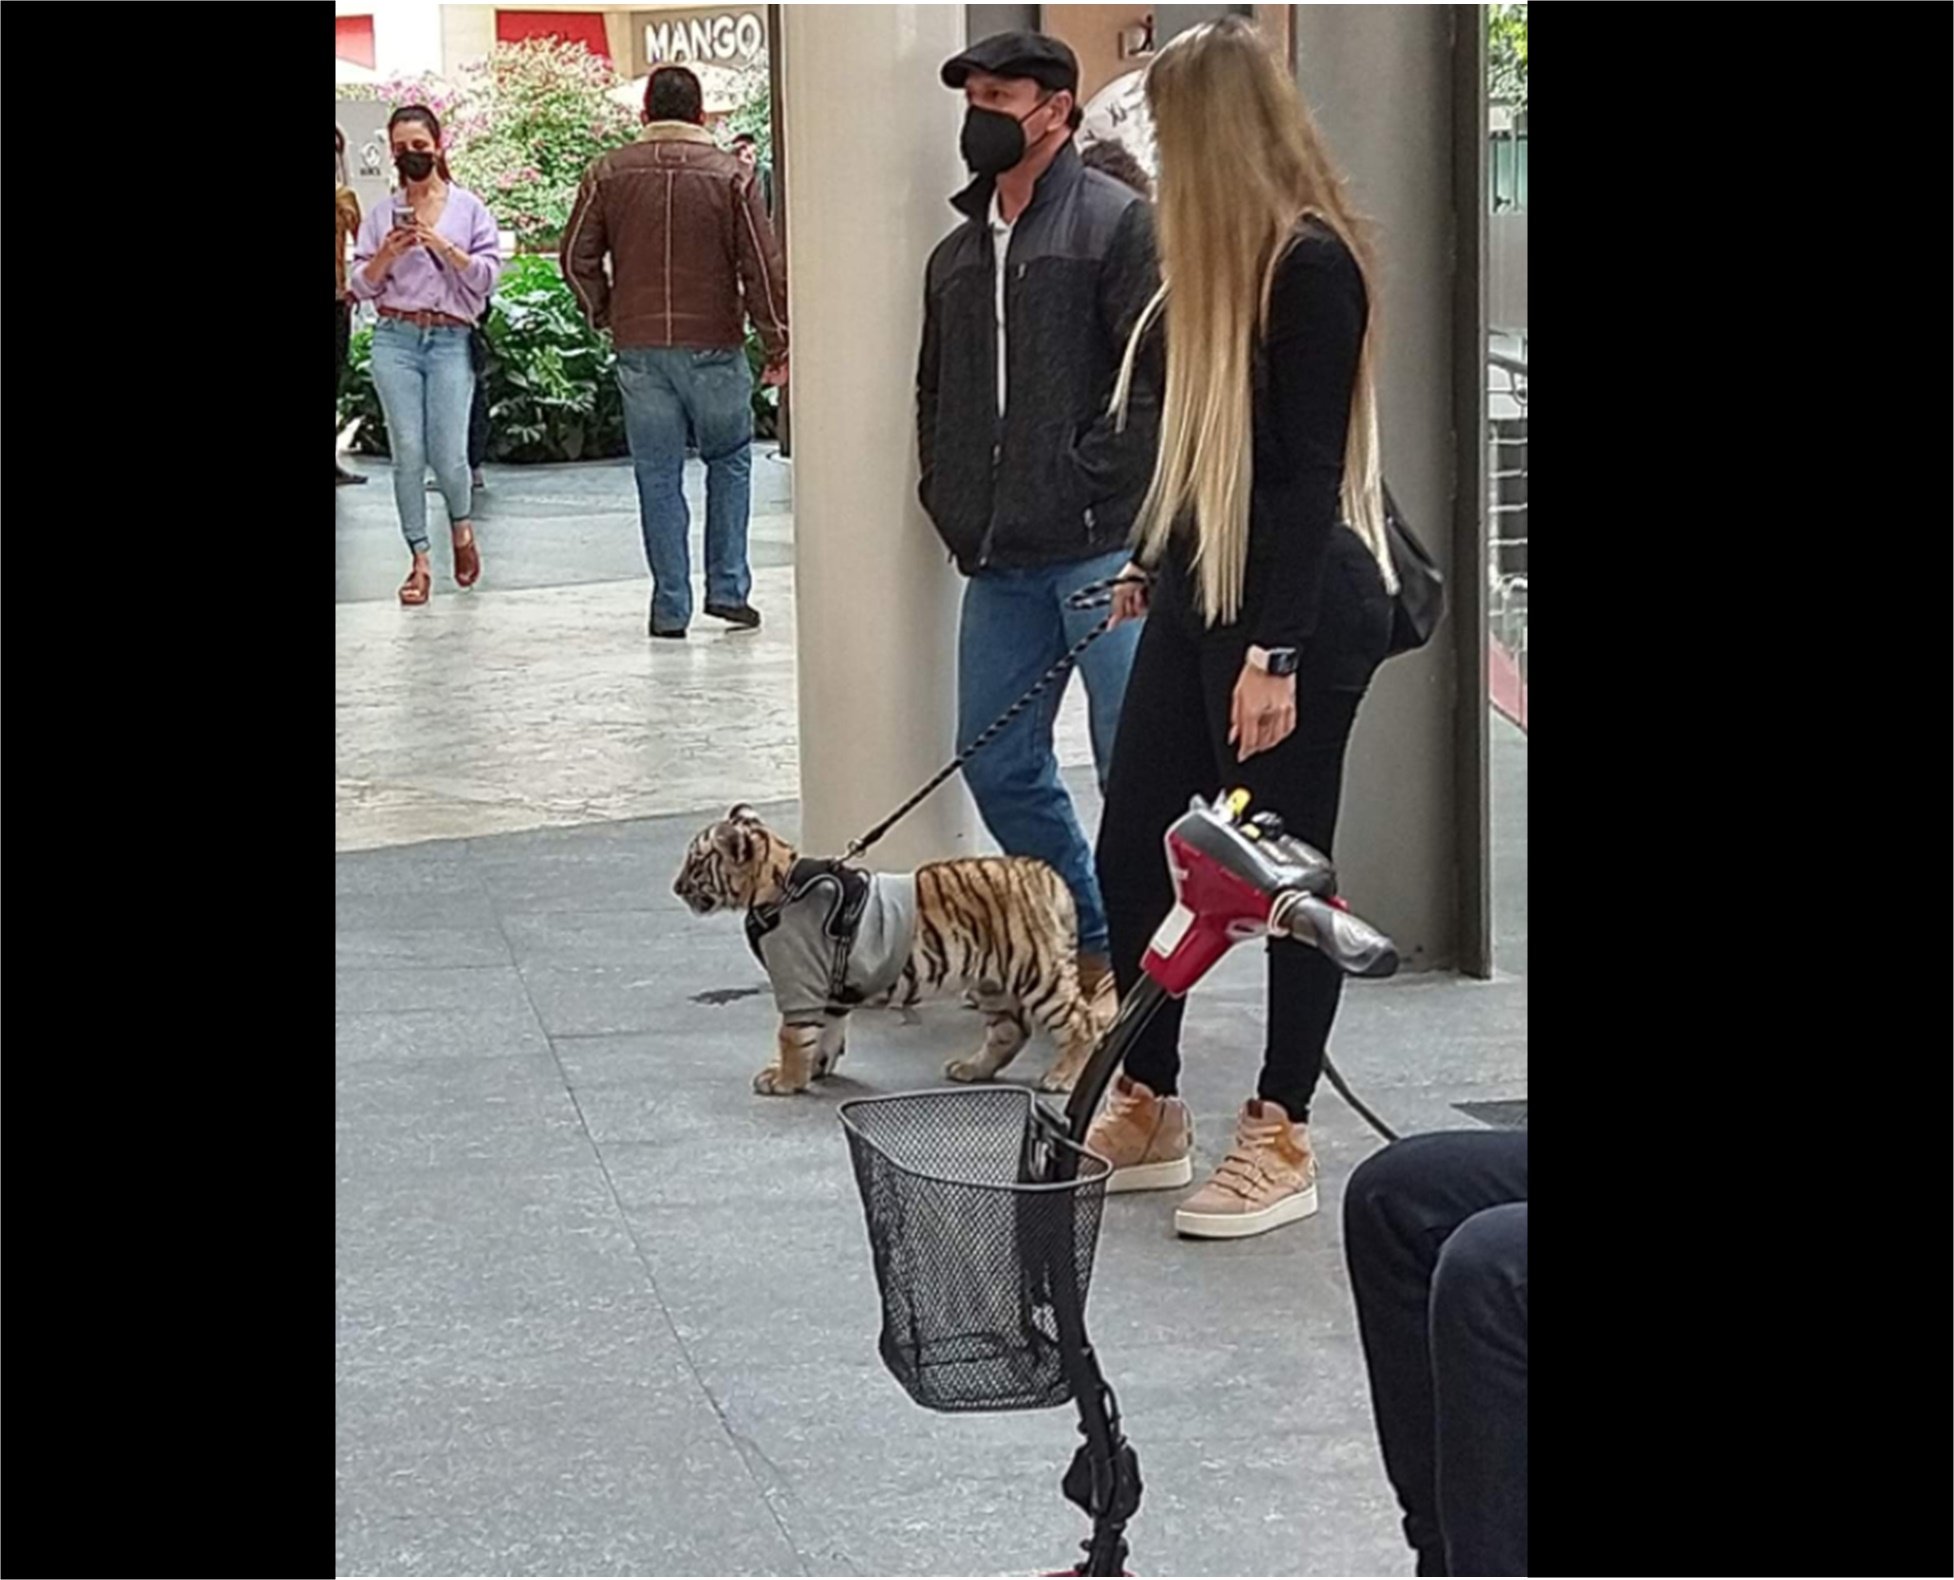 Captan a mujer paseando a un tigre en centro comercial Antara 